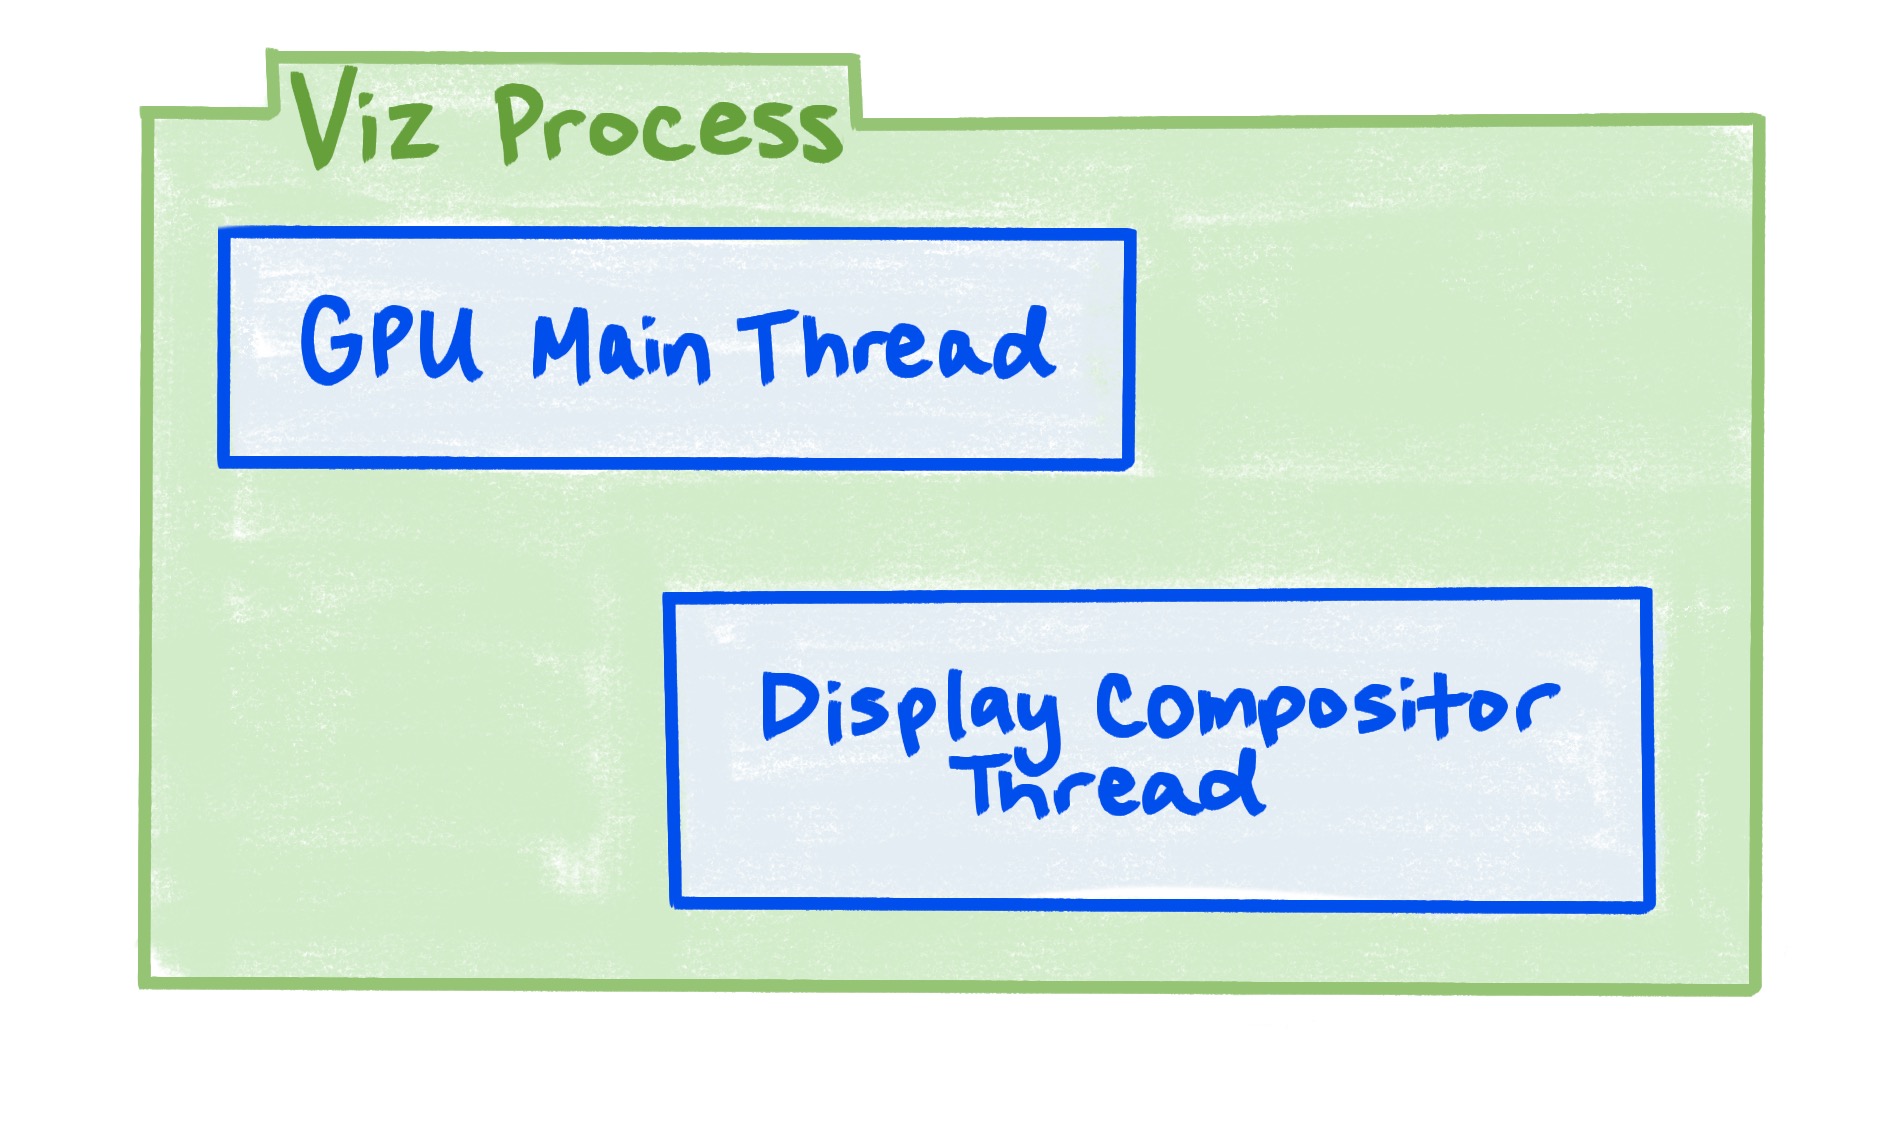 Процесс Viz включает в себя основной поток графического процессора и поток компоновщика дисплея.